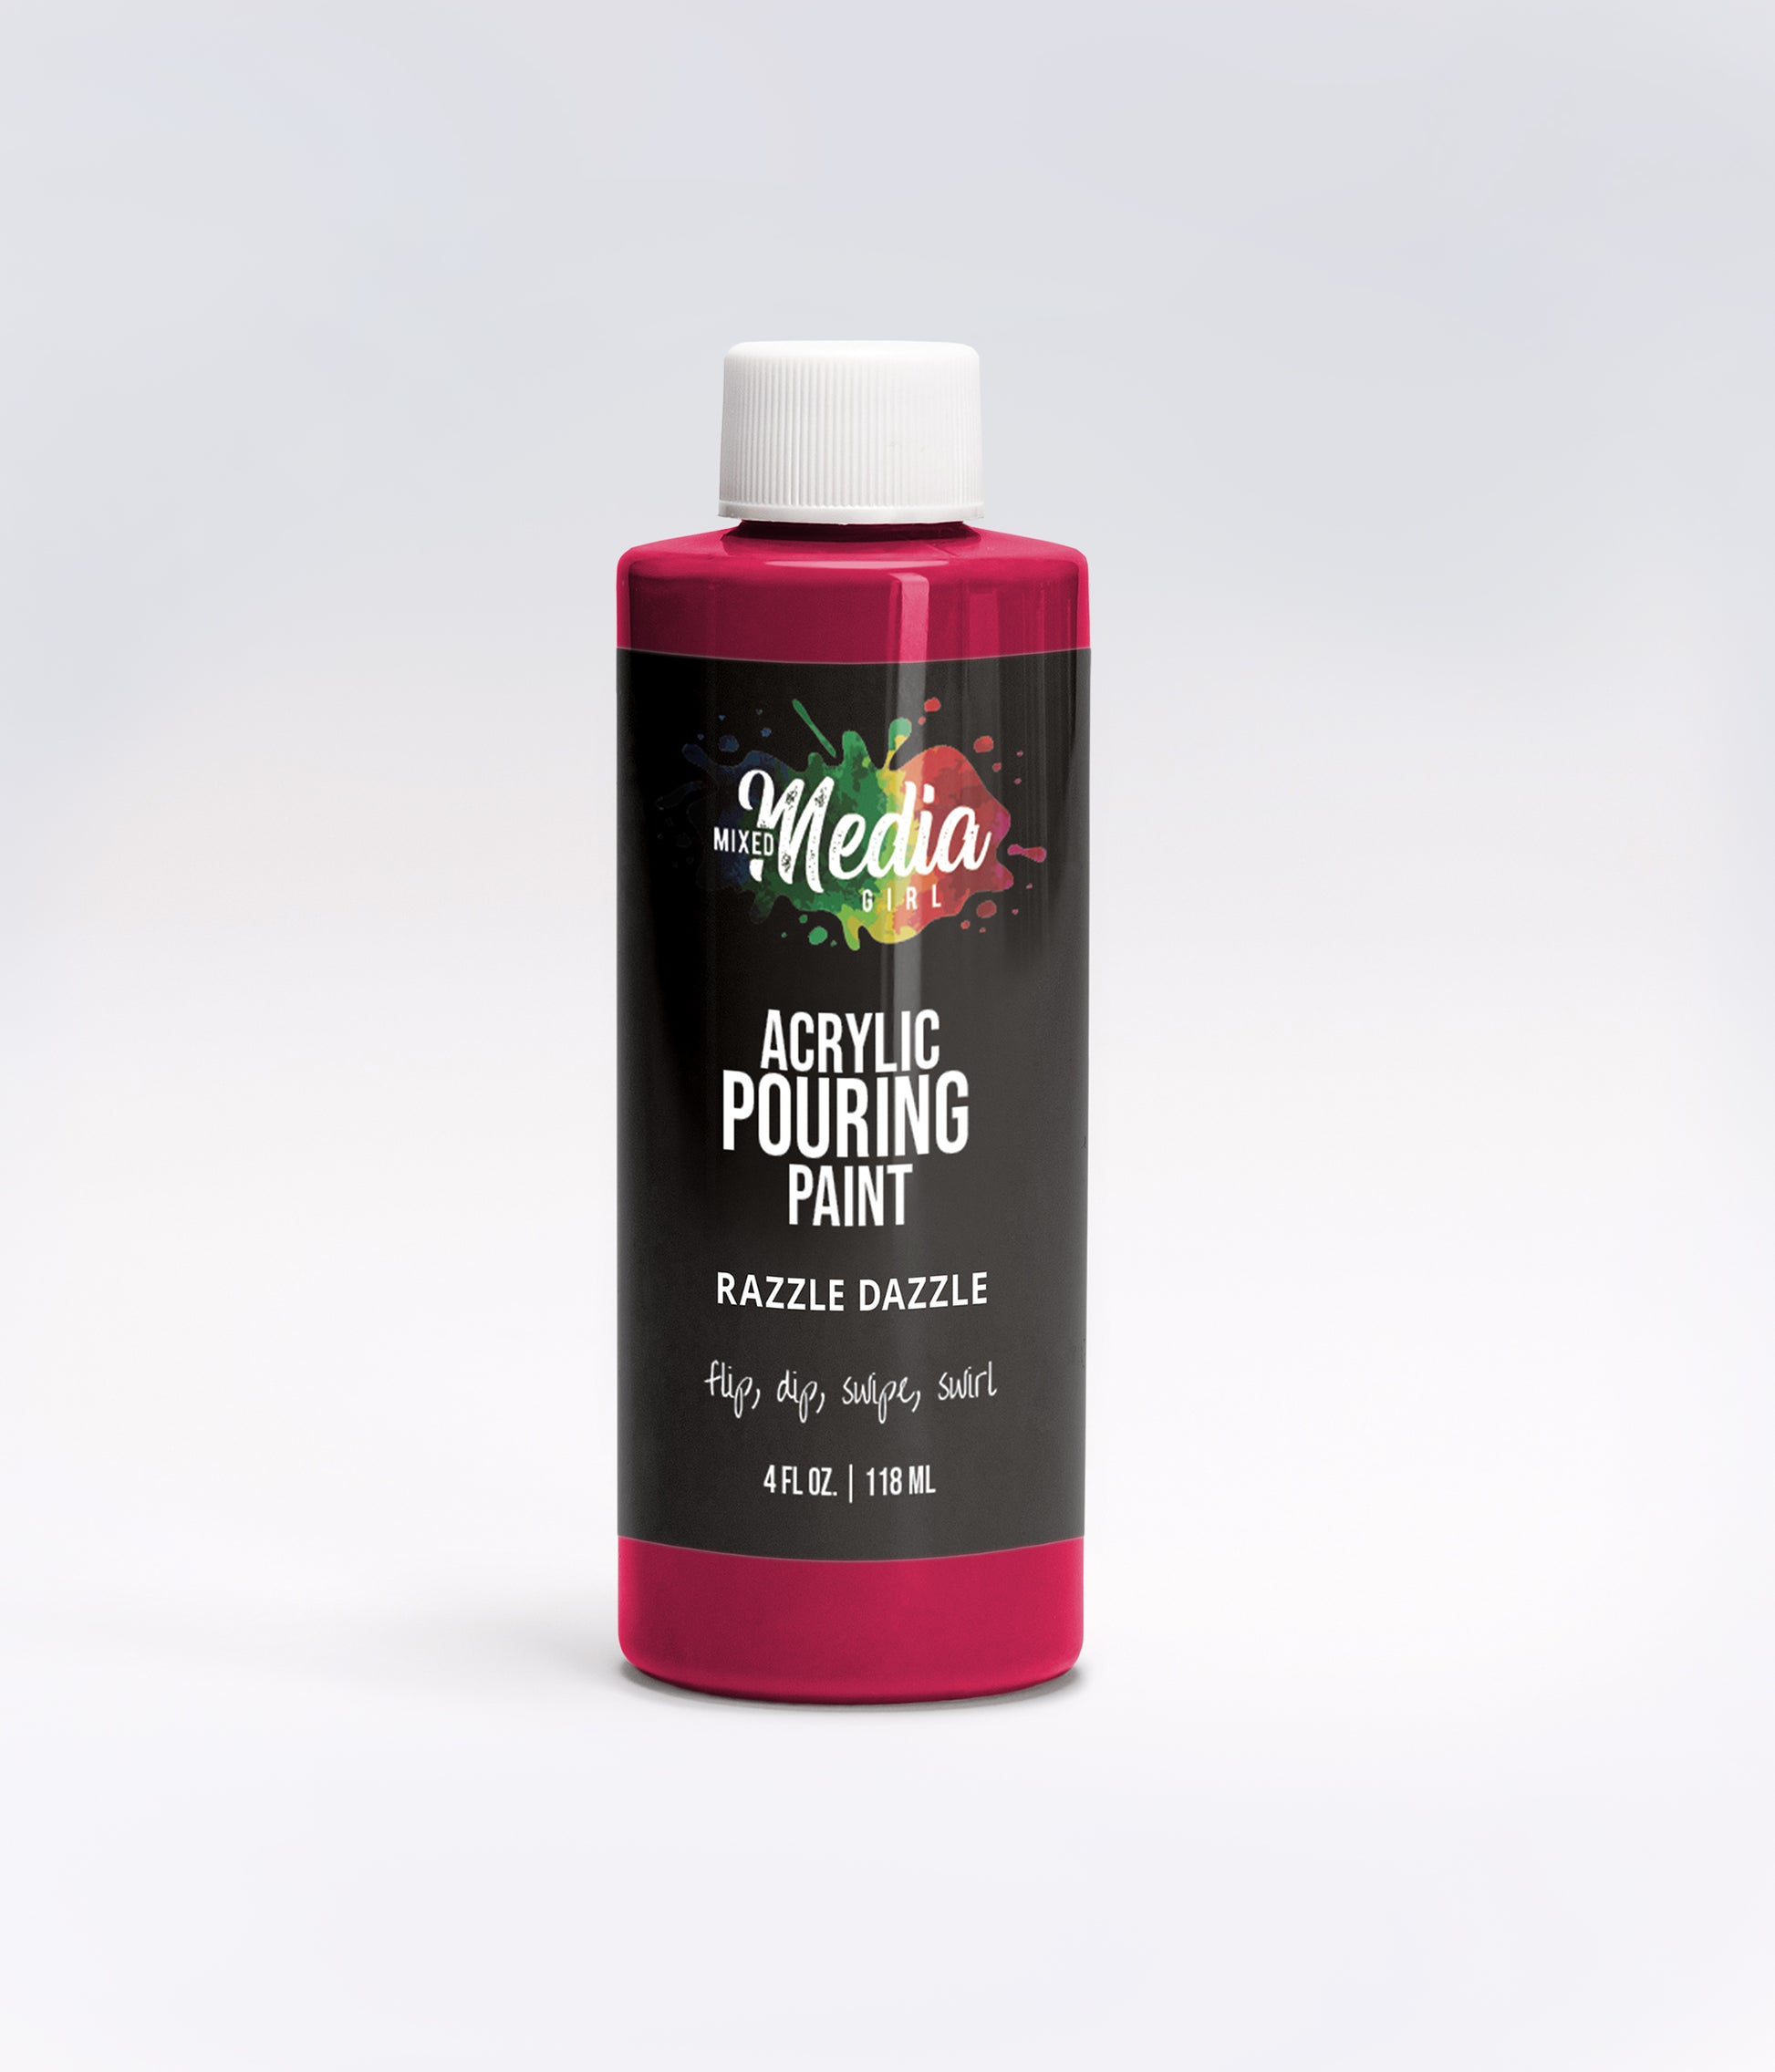 Arteza Pouring Acrylic Paint Premium Ready to Pour 32 x 2 oz